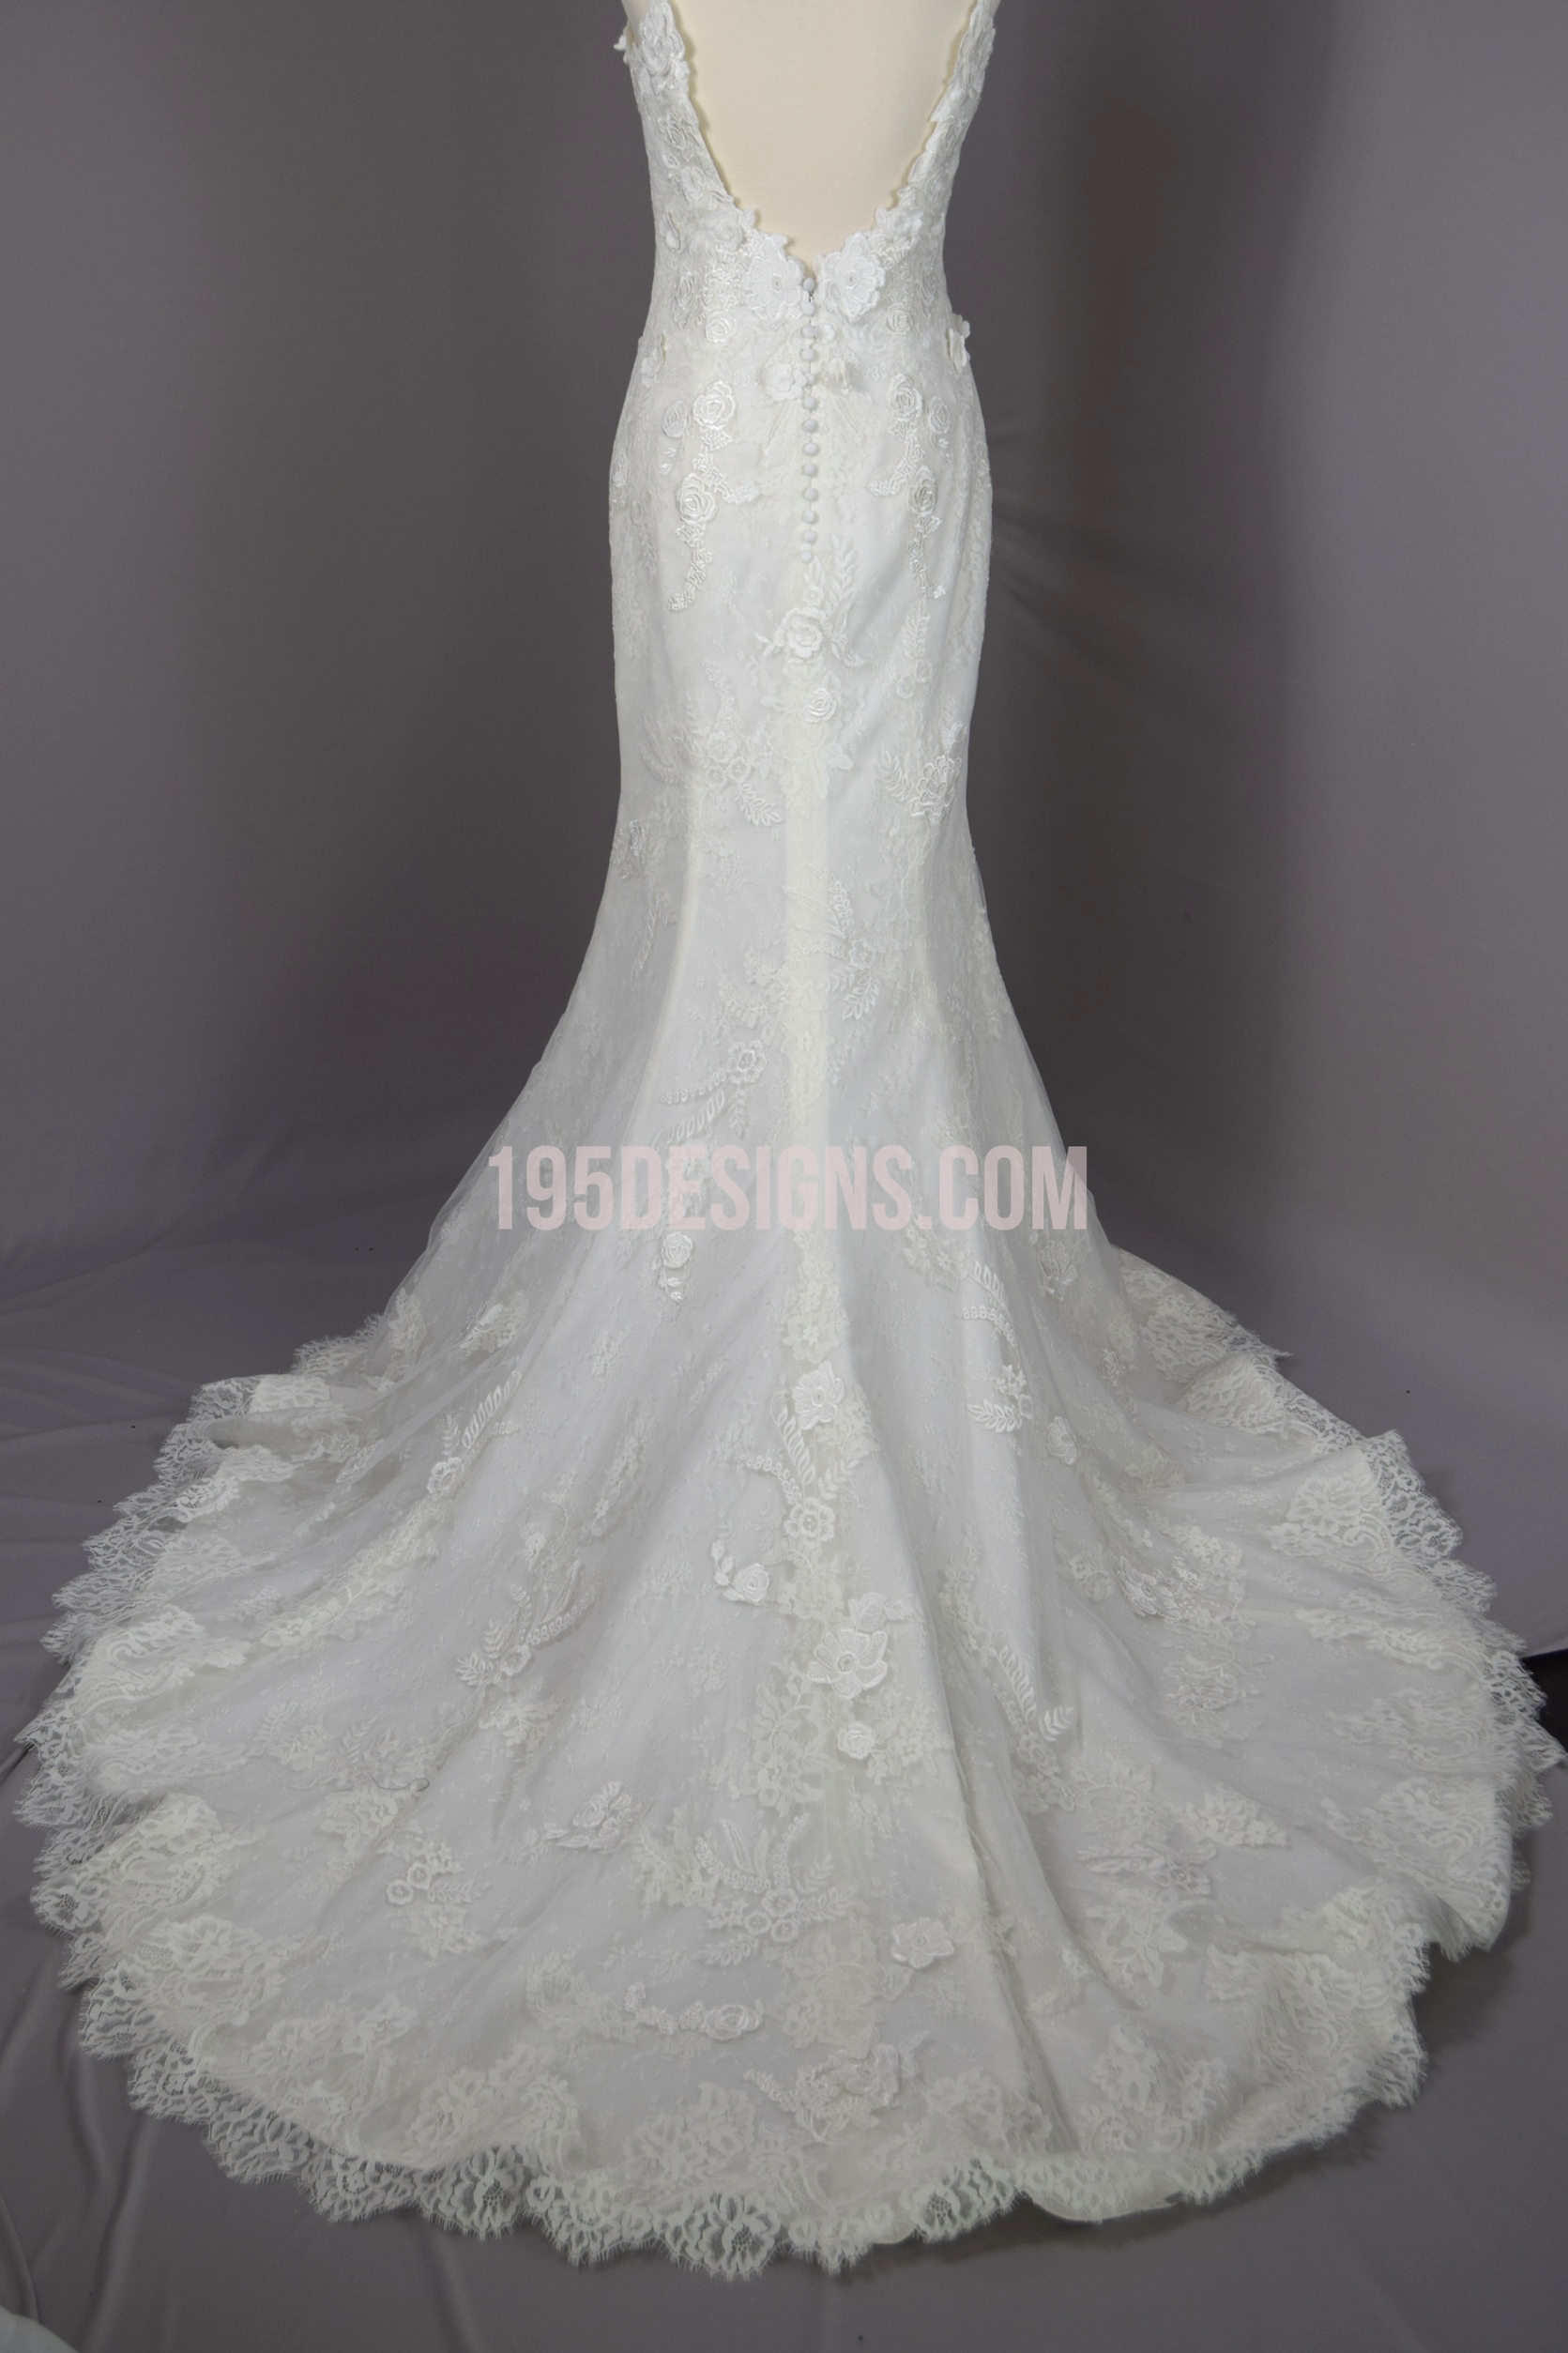 Sanpatrick Lace Wedding Dress